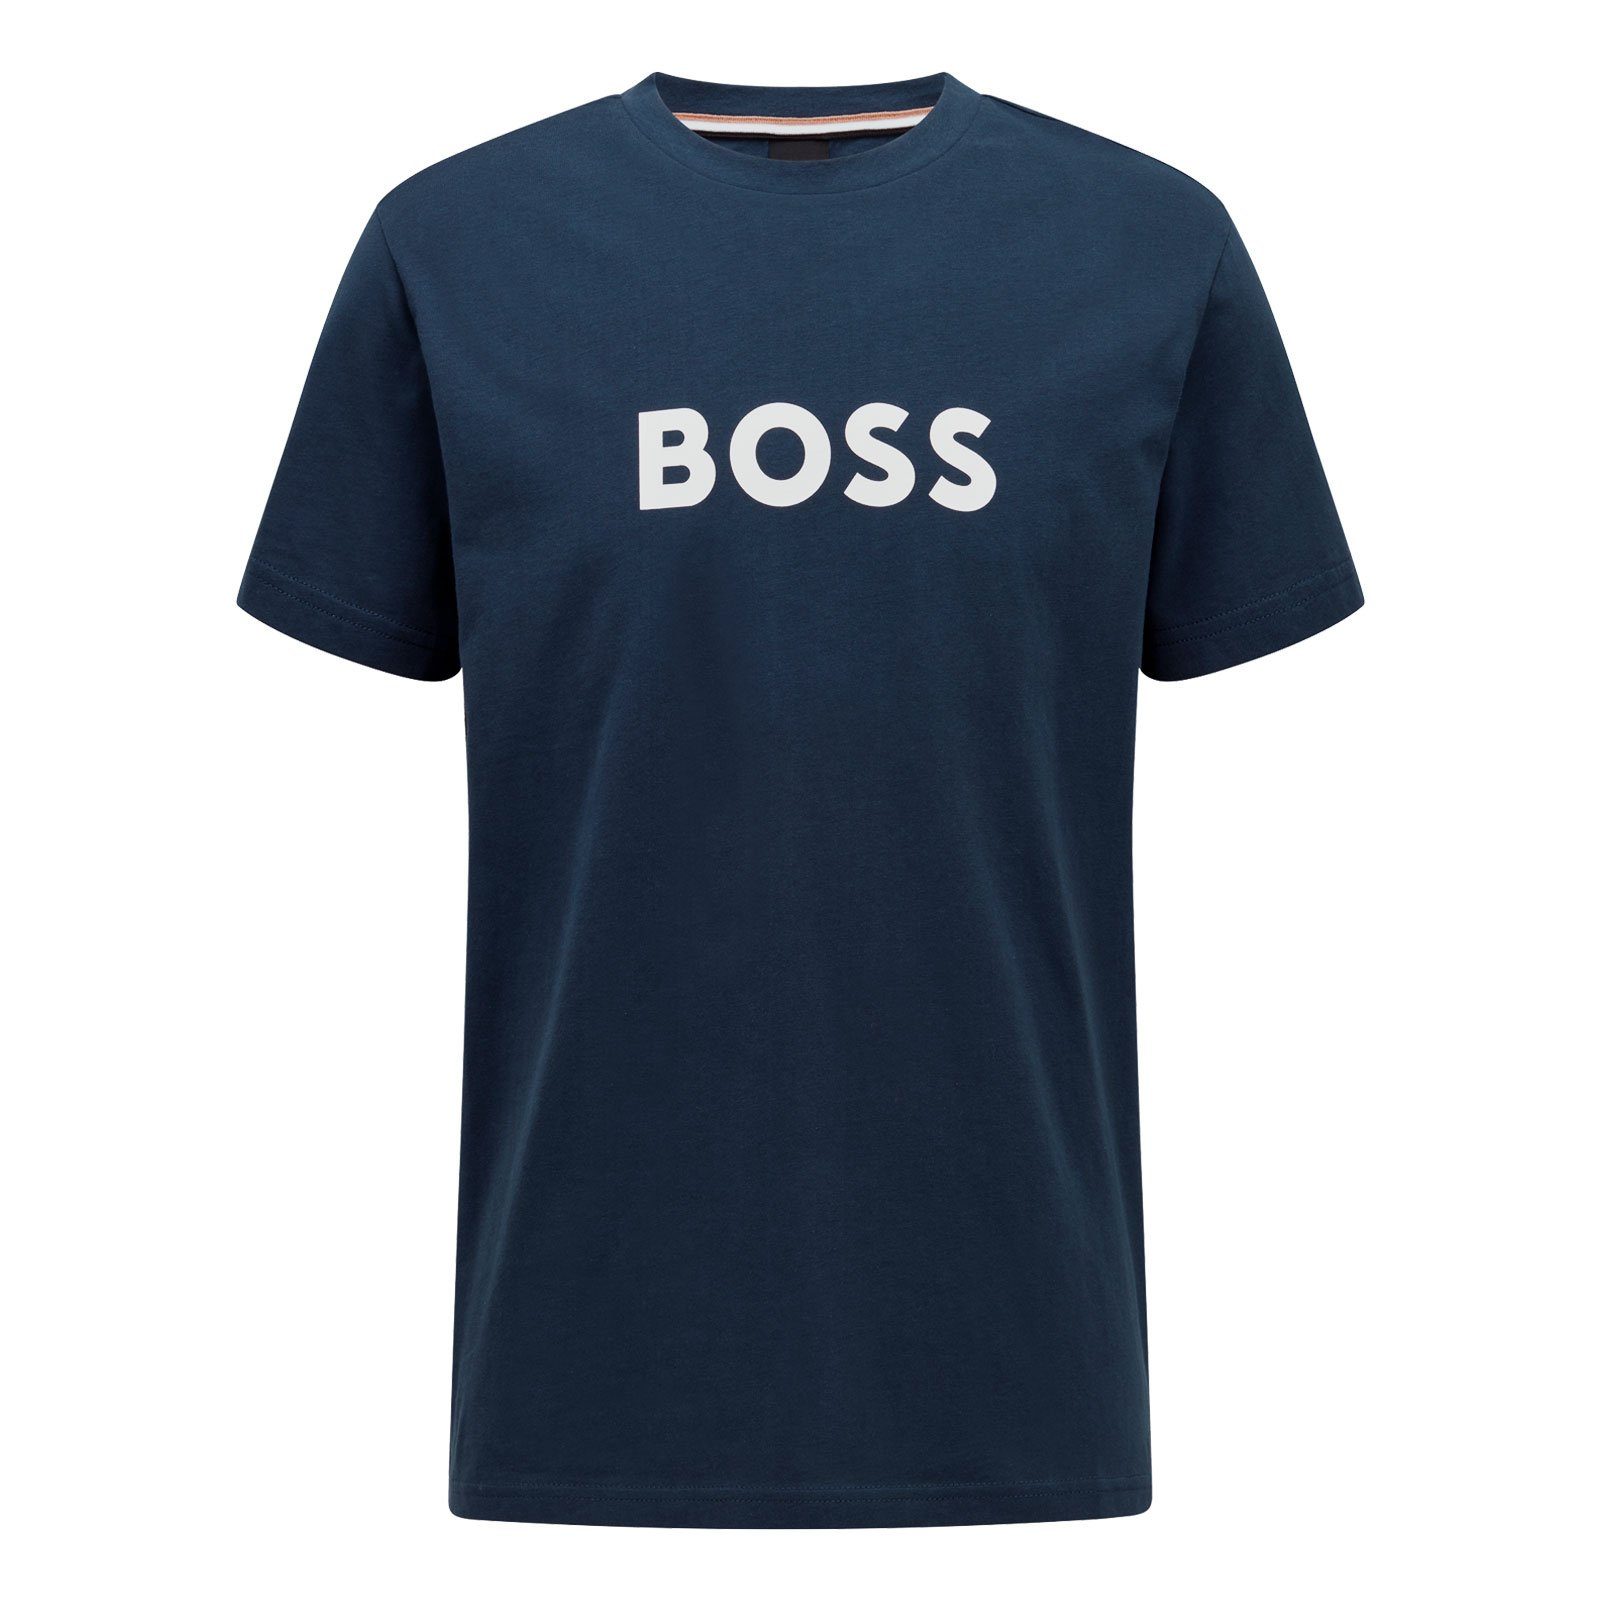 BOSS T-Shirt RN Sun Protection mit großem Markenprint auf der Brust 415 navy